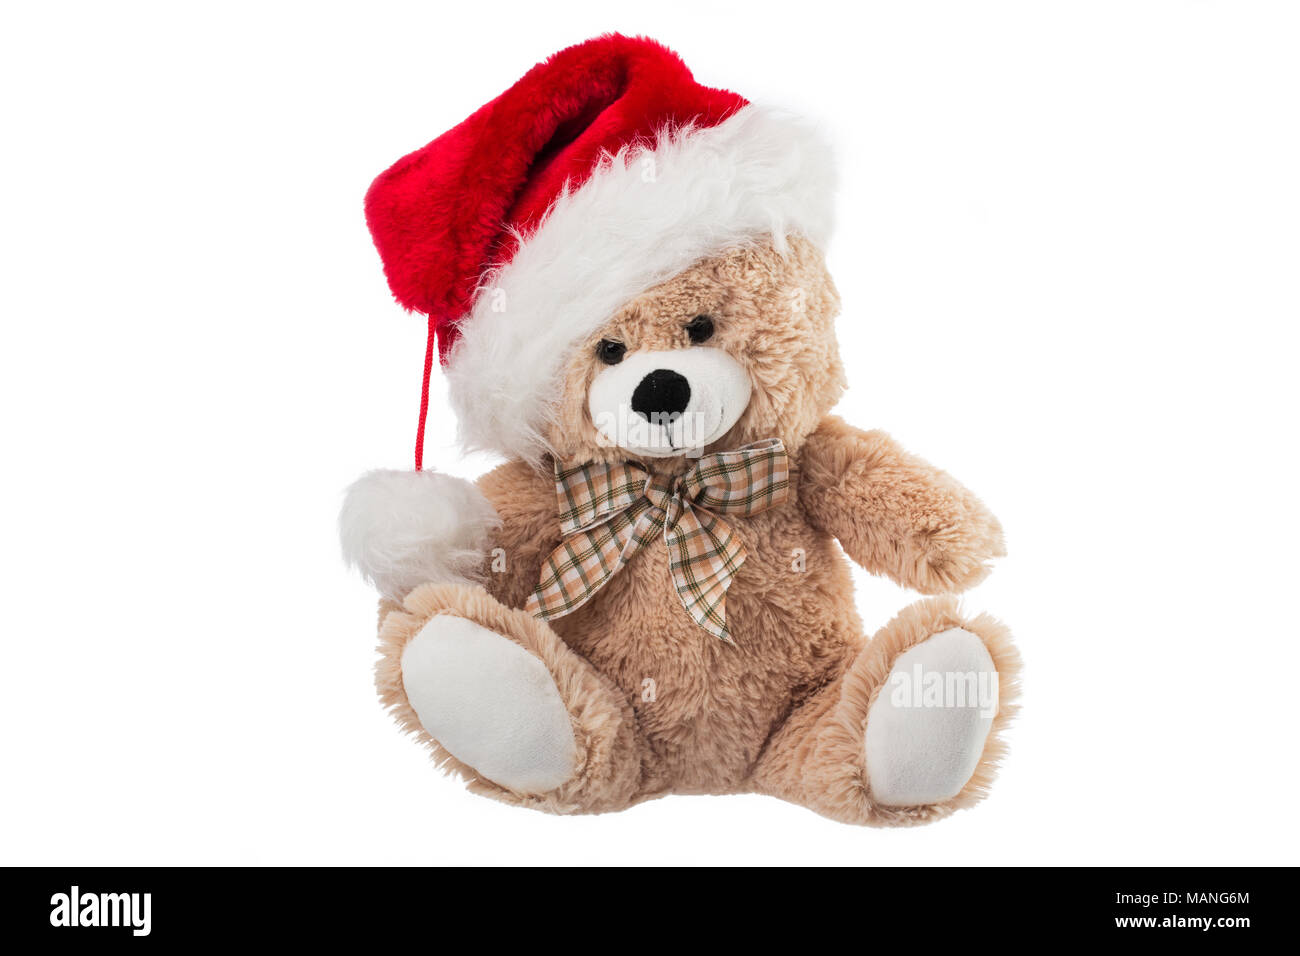 Immagini Natale Orsetti.Birichino Orsetto Con Cappello Di Natale Isolato Su Sfondo Bianco Foto Stock Alamy